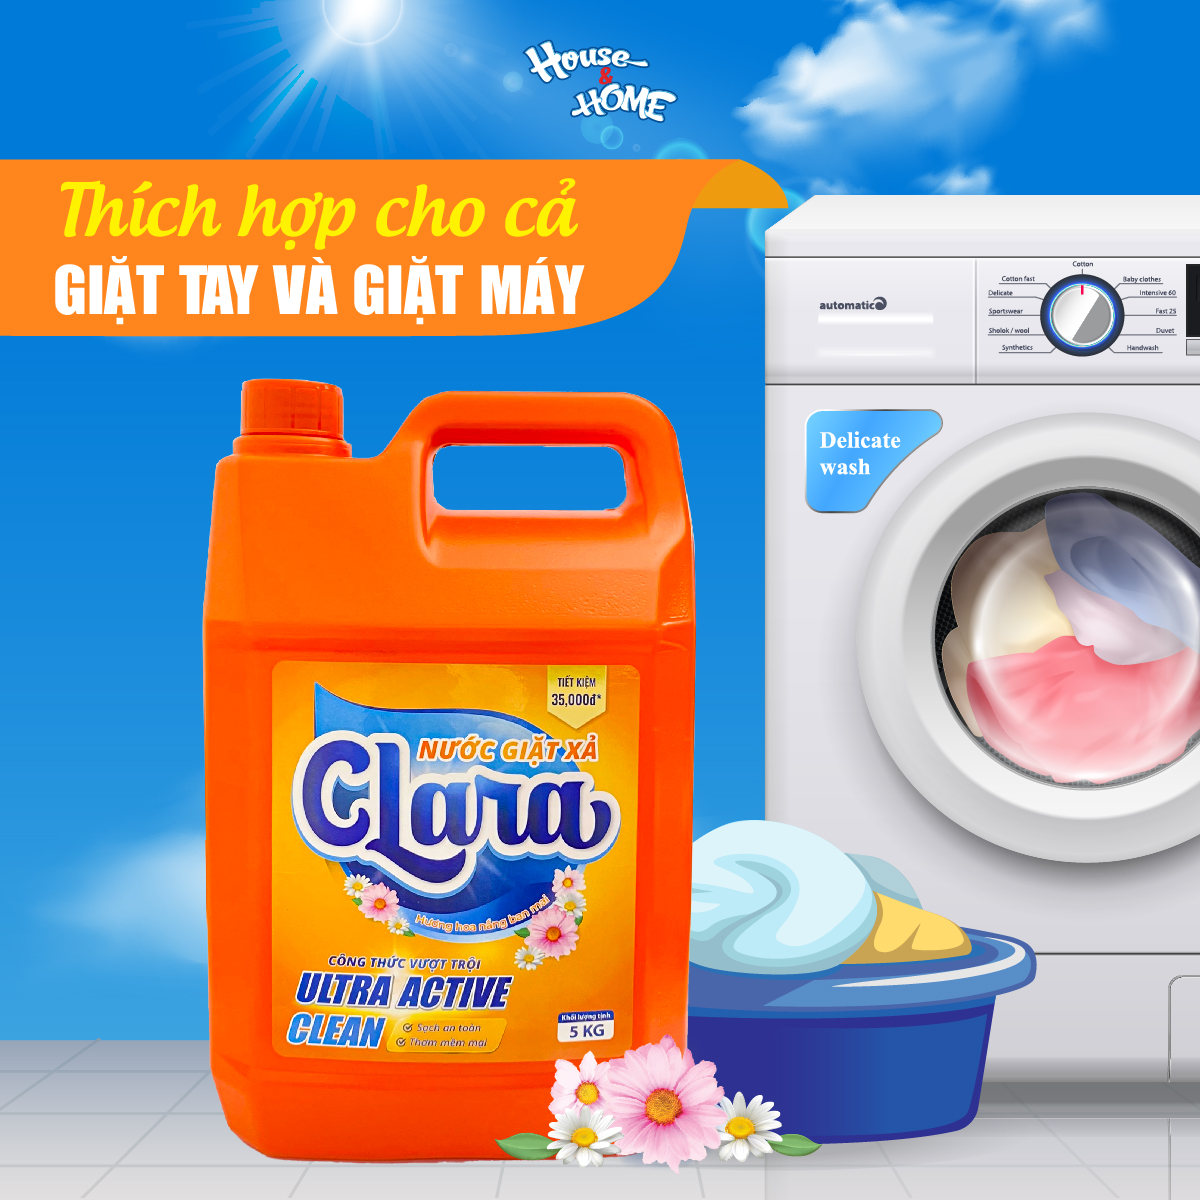 Nước giặt xả Clara hương hoa nắng ban mai can